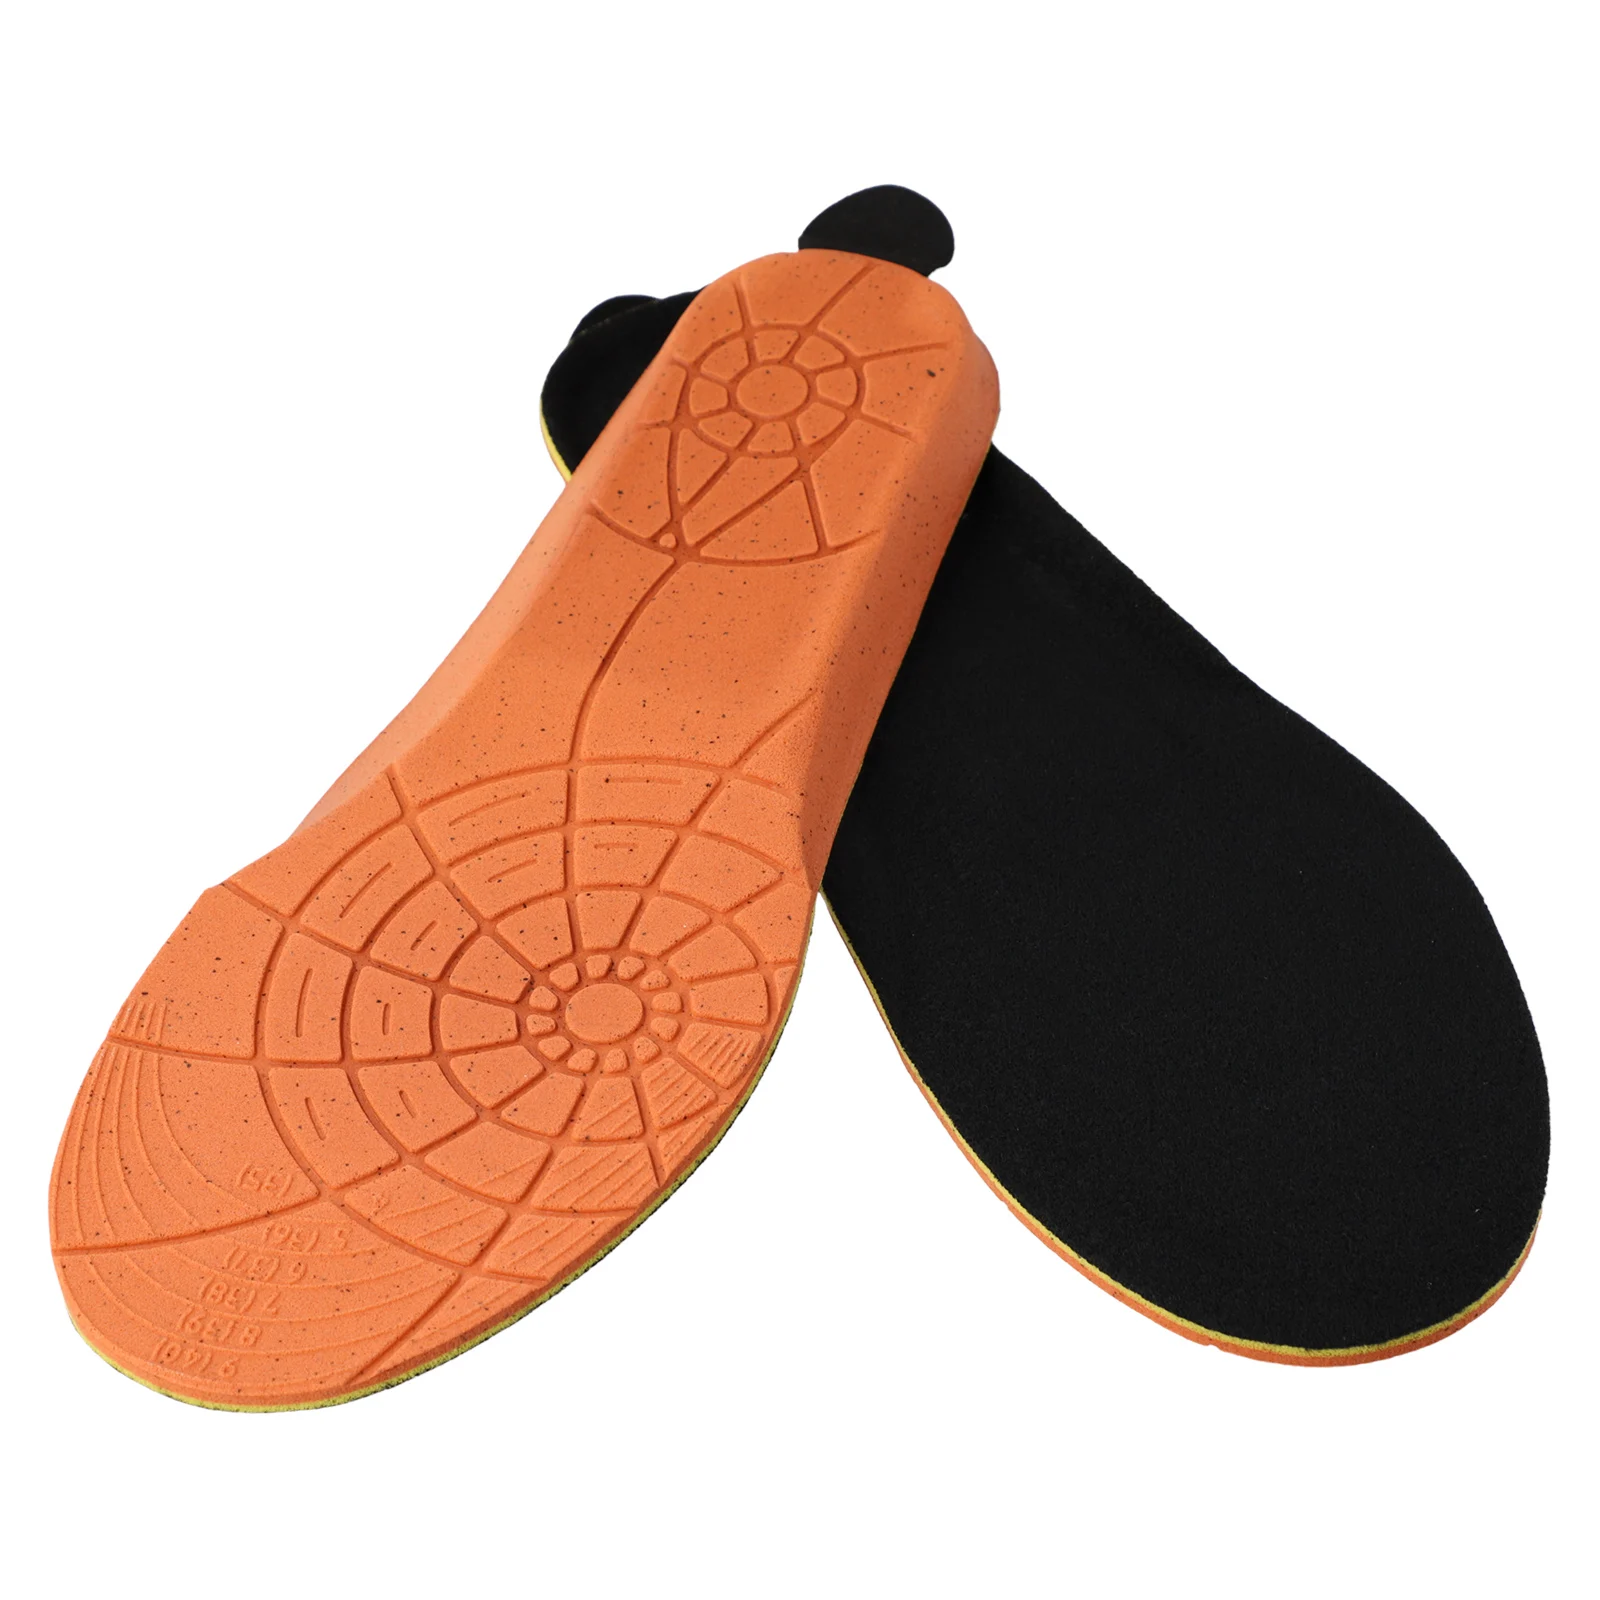 USB-стельки с подогревом для обуви Беспроводное управление Высокая эффективность нагрева Комфортное и дышащее зимнее тепло для ног Изображение 1